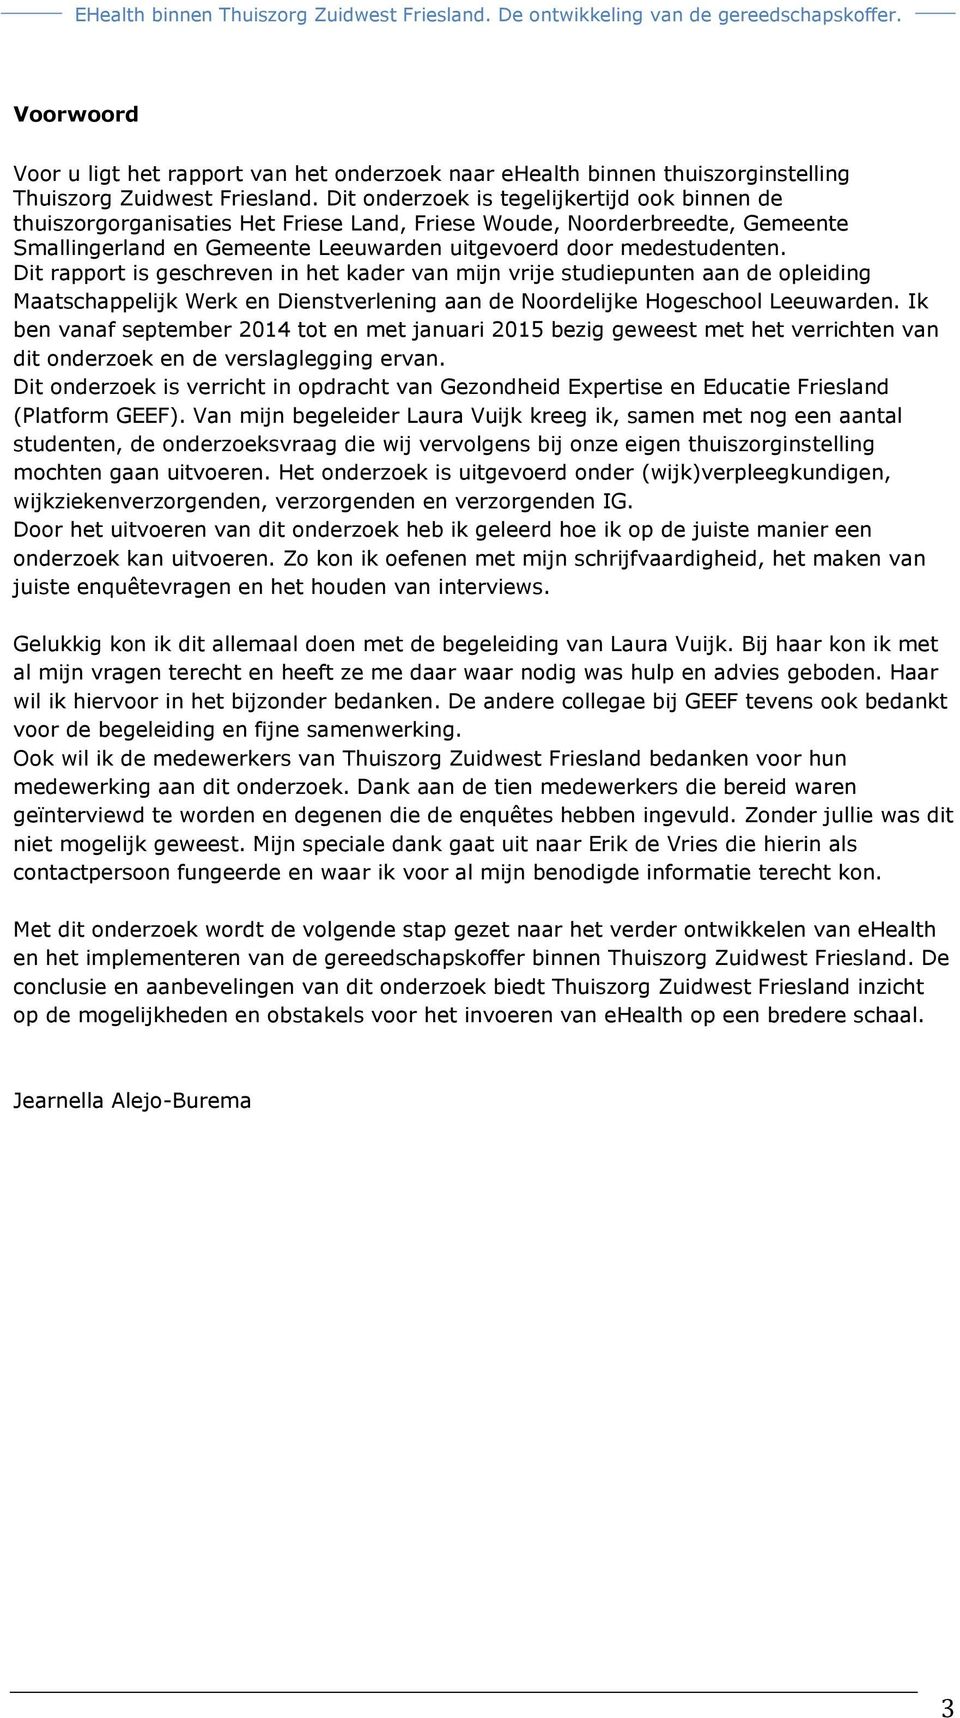 Dit rapport is geschreven in het kader van mijn vrije studiepunten aan de opleiding Maatschappelijk Werk en Dienstverlening aan de Noordelijke Hogeschool Leeuwarden.